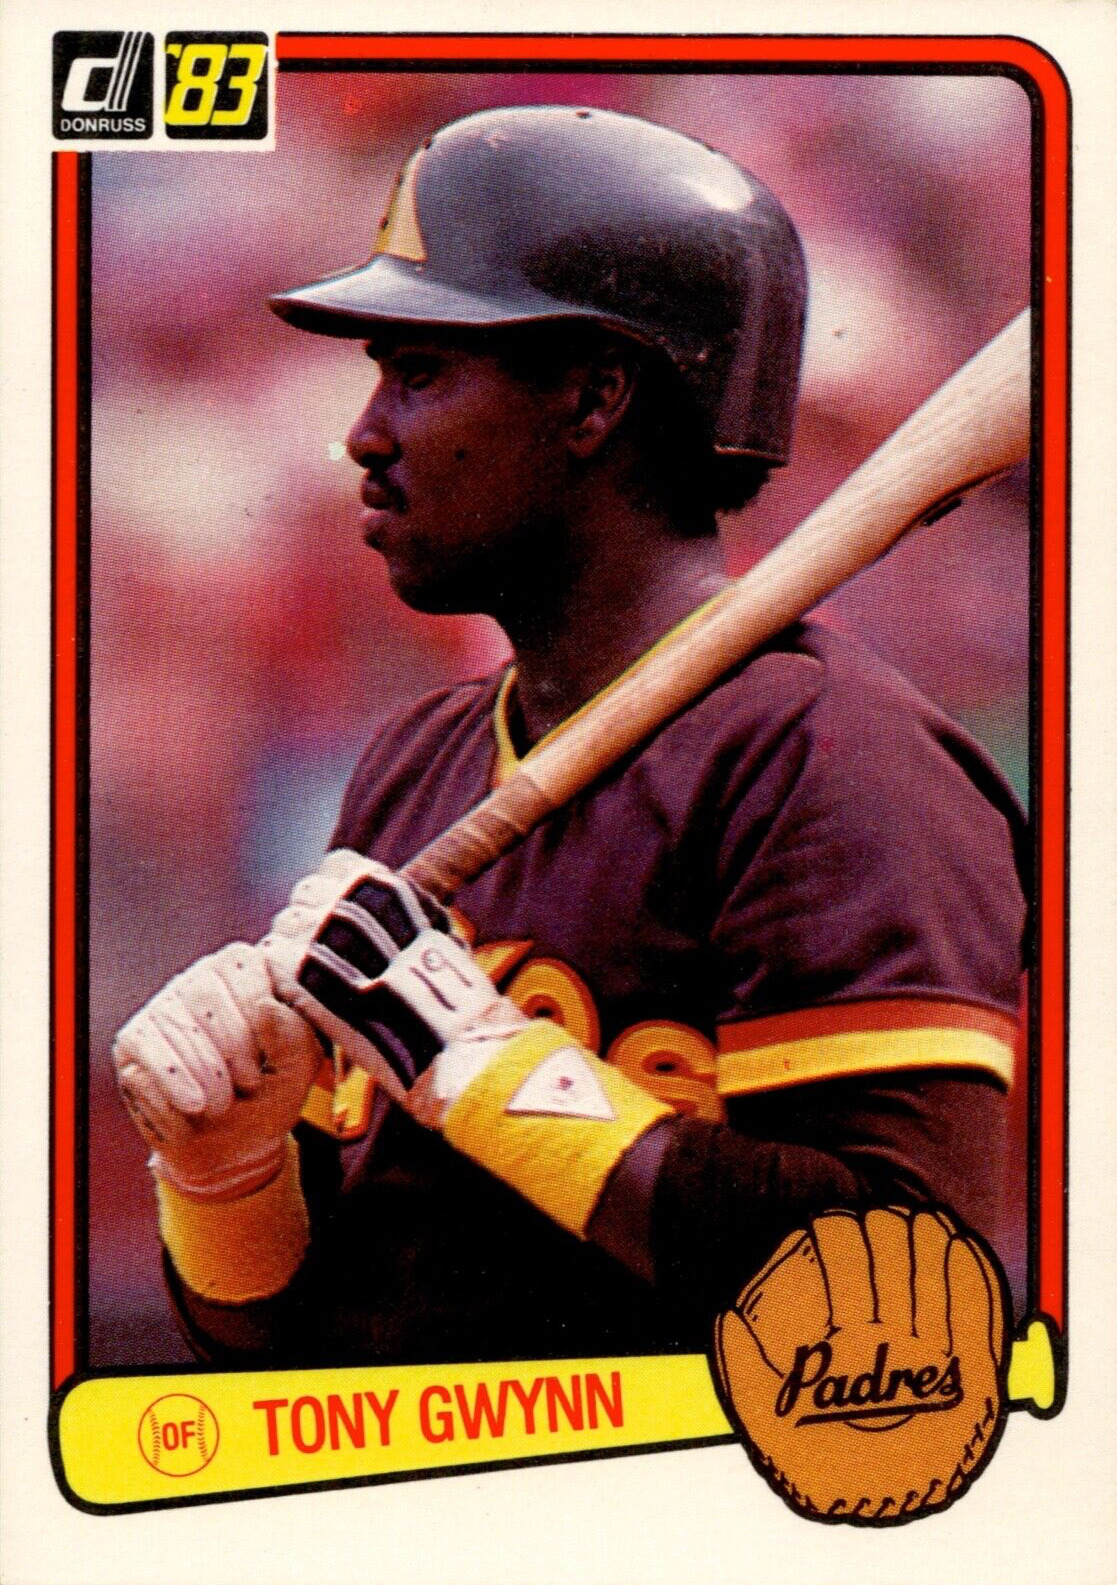 1983 Donruss Tony Gwynn #598 Rookie San Diego Padres HOF - 